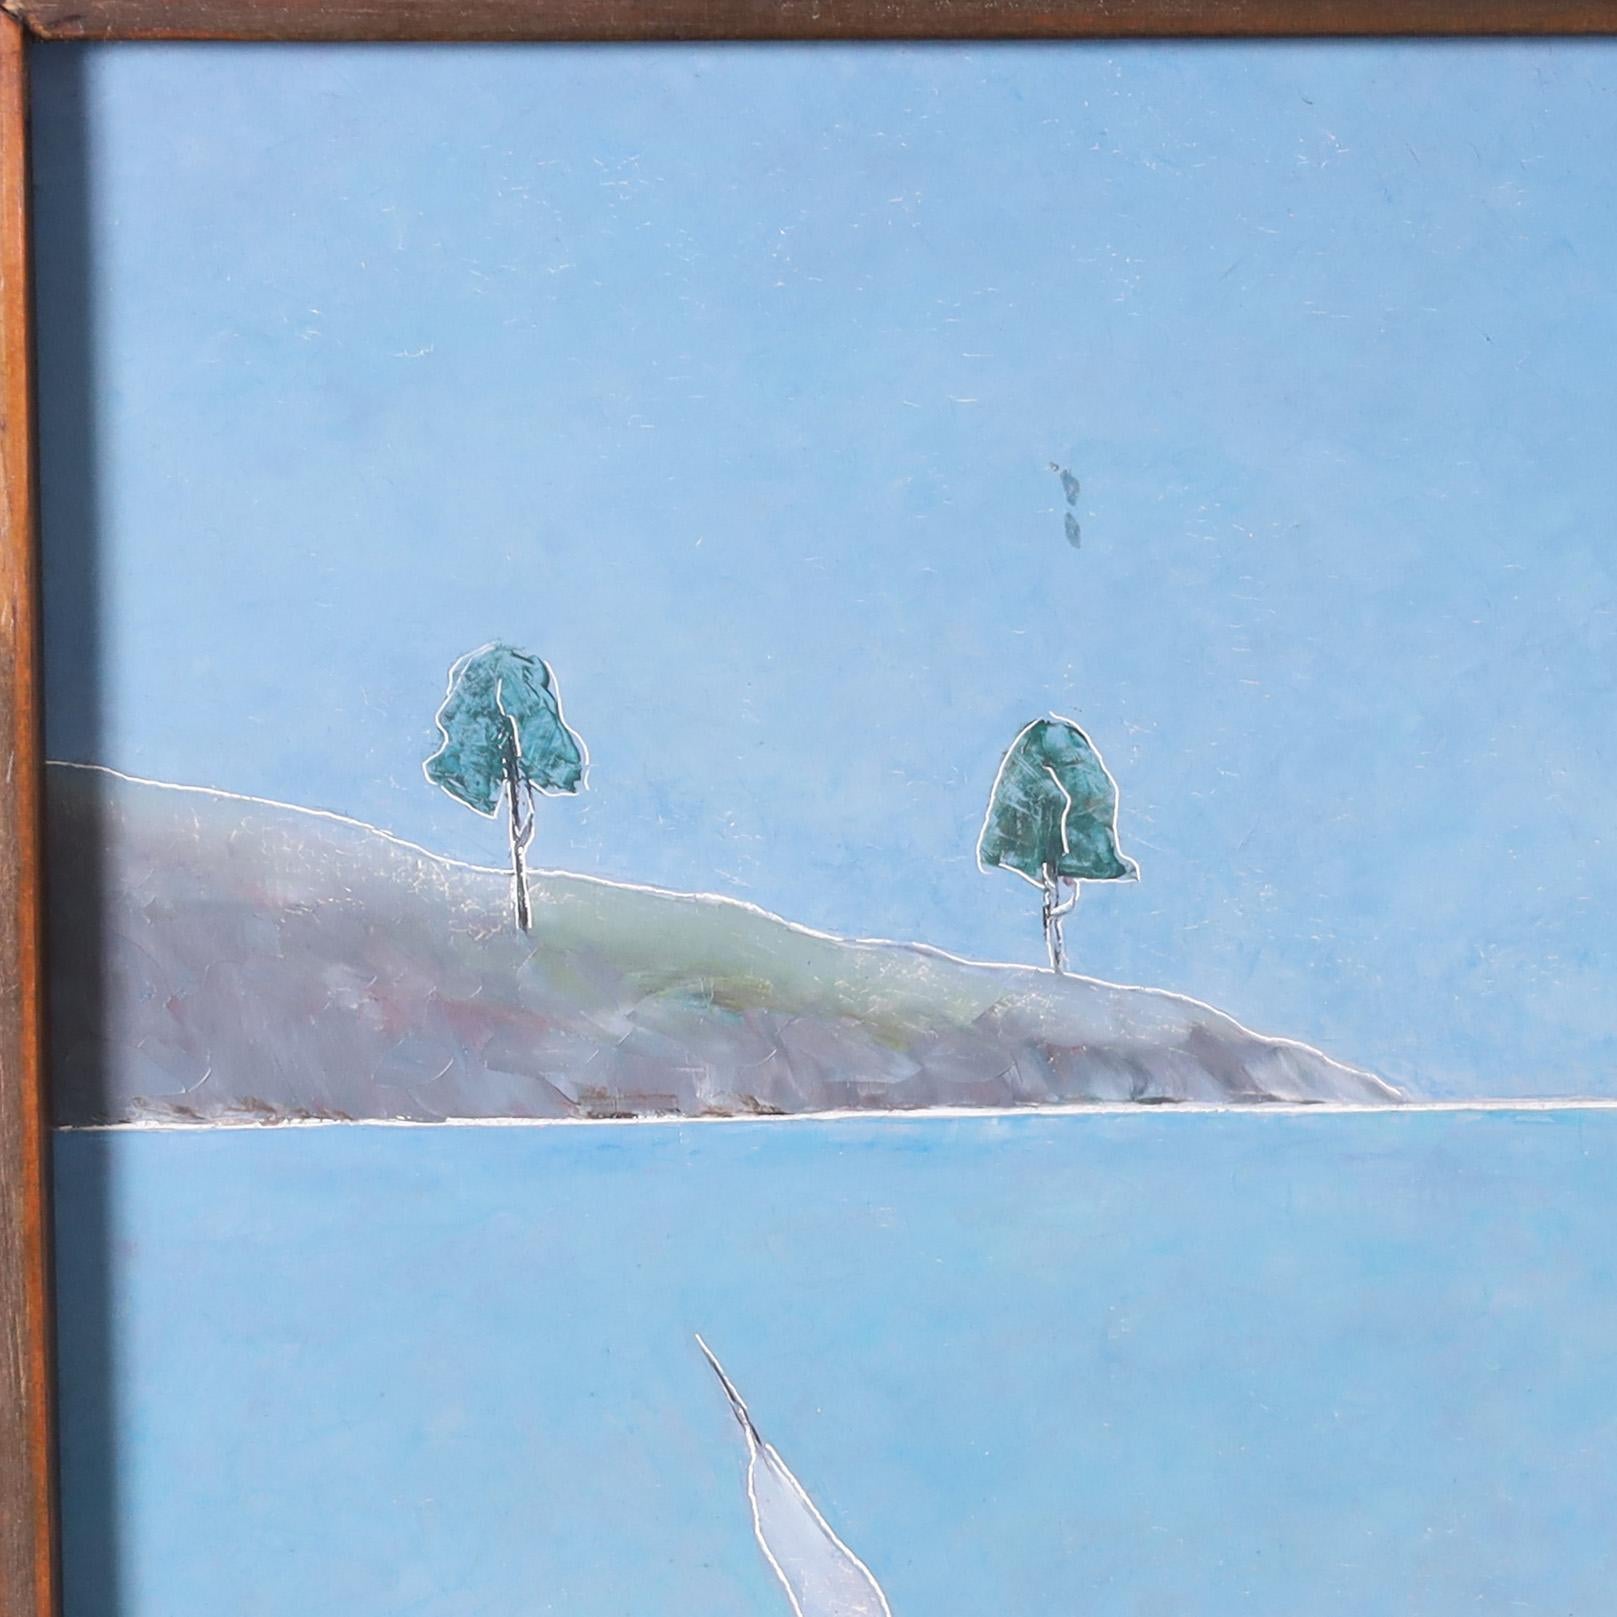 Charmante peinture à l'huile sur panneau haïtienne du milieu du siècle, représentant des bateaux et des gens dans un paysage de baie, exécutée dans un style minimaliste moderne inhabituel. Signée F. Lamothe, présentée dans un cadre en acajou et